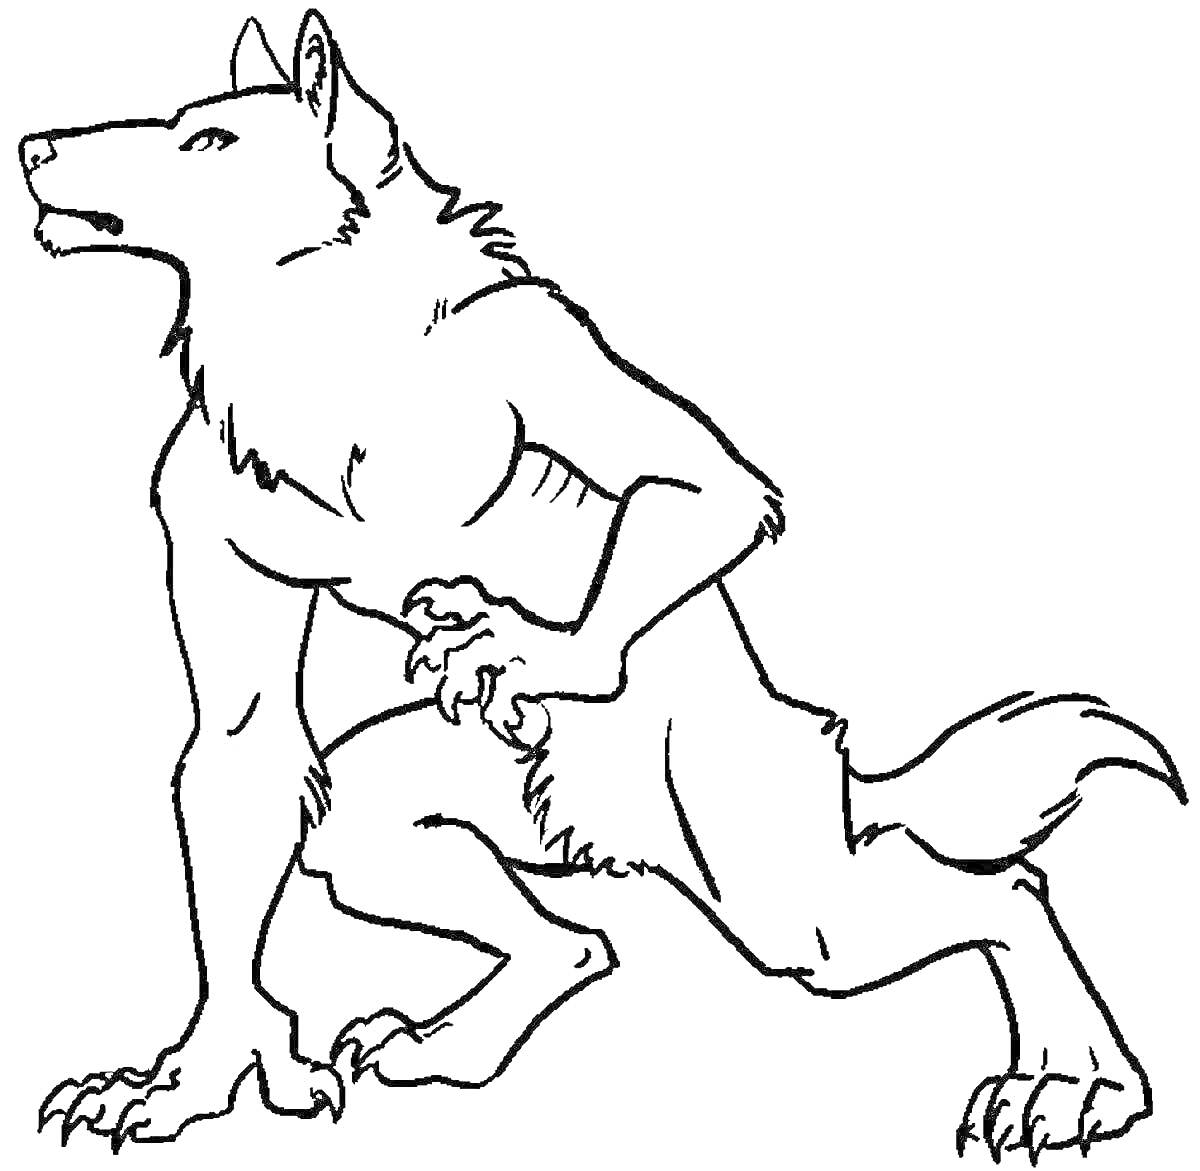 Раскраска Оборотень волк в боевой стойке с приподнятыми лапами